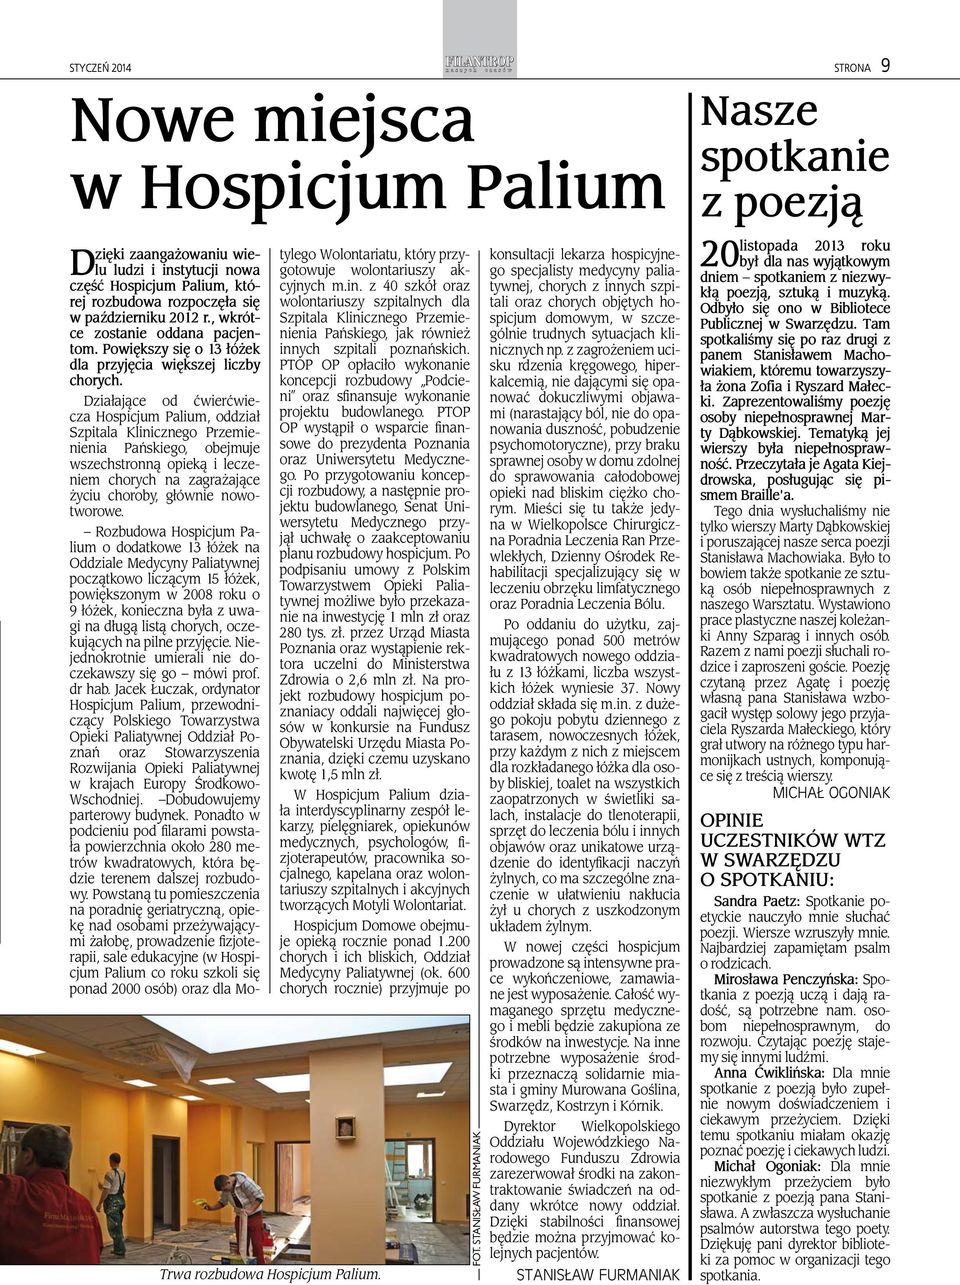 Działające od ćwierćwiecza Hospicjum Palium, oddział Szpitala Klinicznego Przemienienia Pańskiego, obejmuje wszechstronną opieką i leczeniem chorych na zagrażające życiu choroby, głównie nowotworowe.